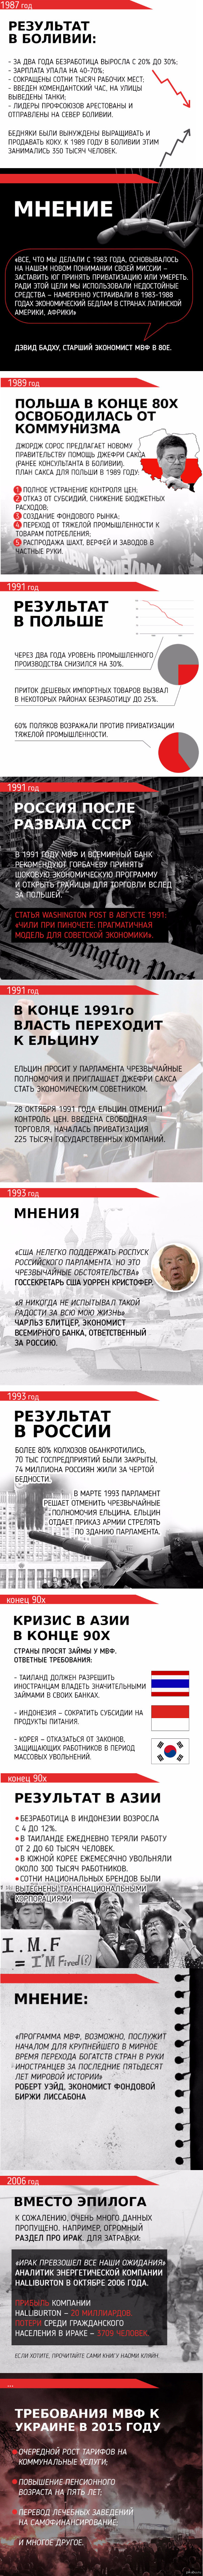      60  ( 2.)   politikus.ru   <a href="http://pikabu.ru/story/prichina_yekonomicheskikh_krizisov_za_poslednie_60_let_chast_1_3248380">http://pikabu.ru/story/_3248380</a>